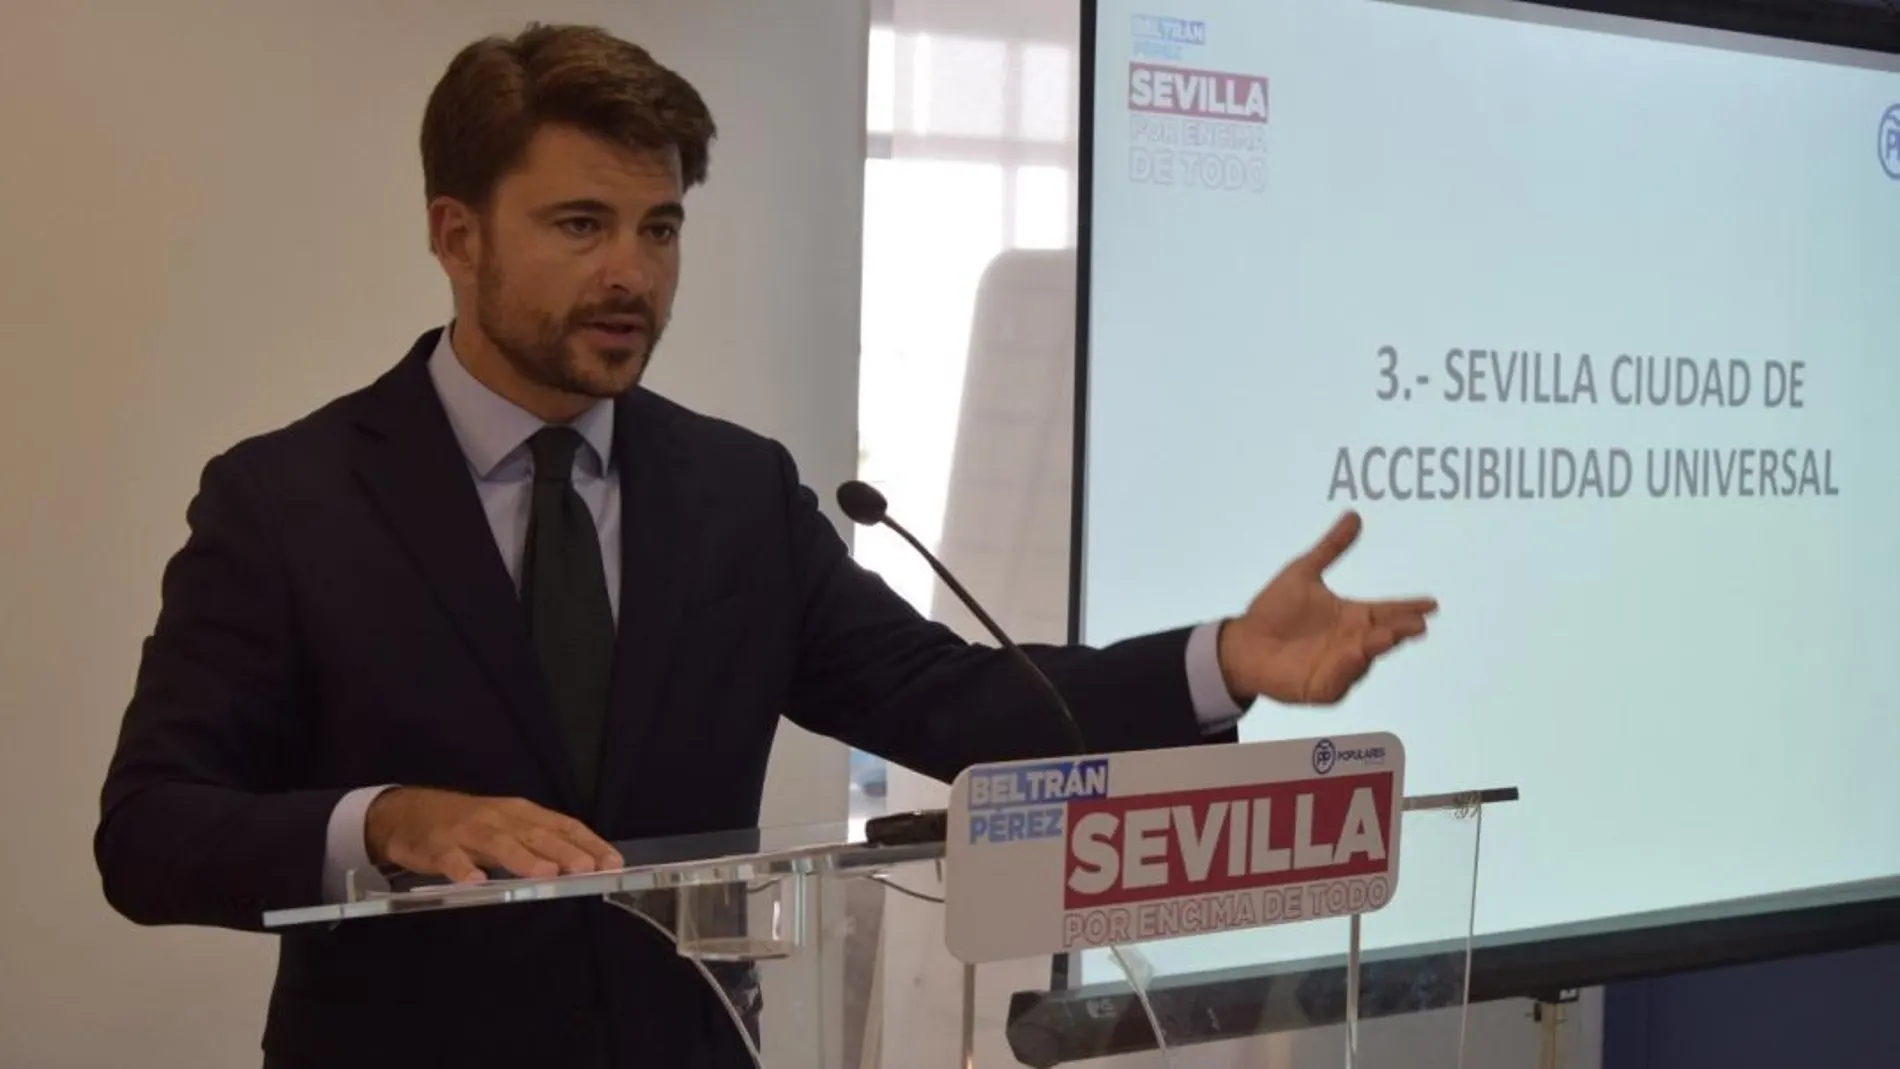 Beltrán Pérez propone una rebaja fiscal en Sevilla de 28 millones en 2019